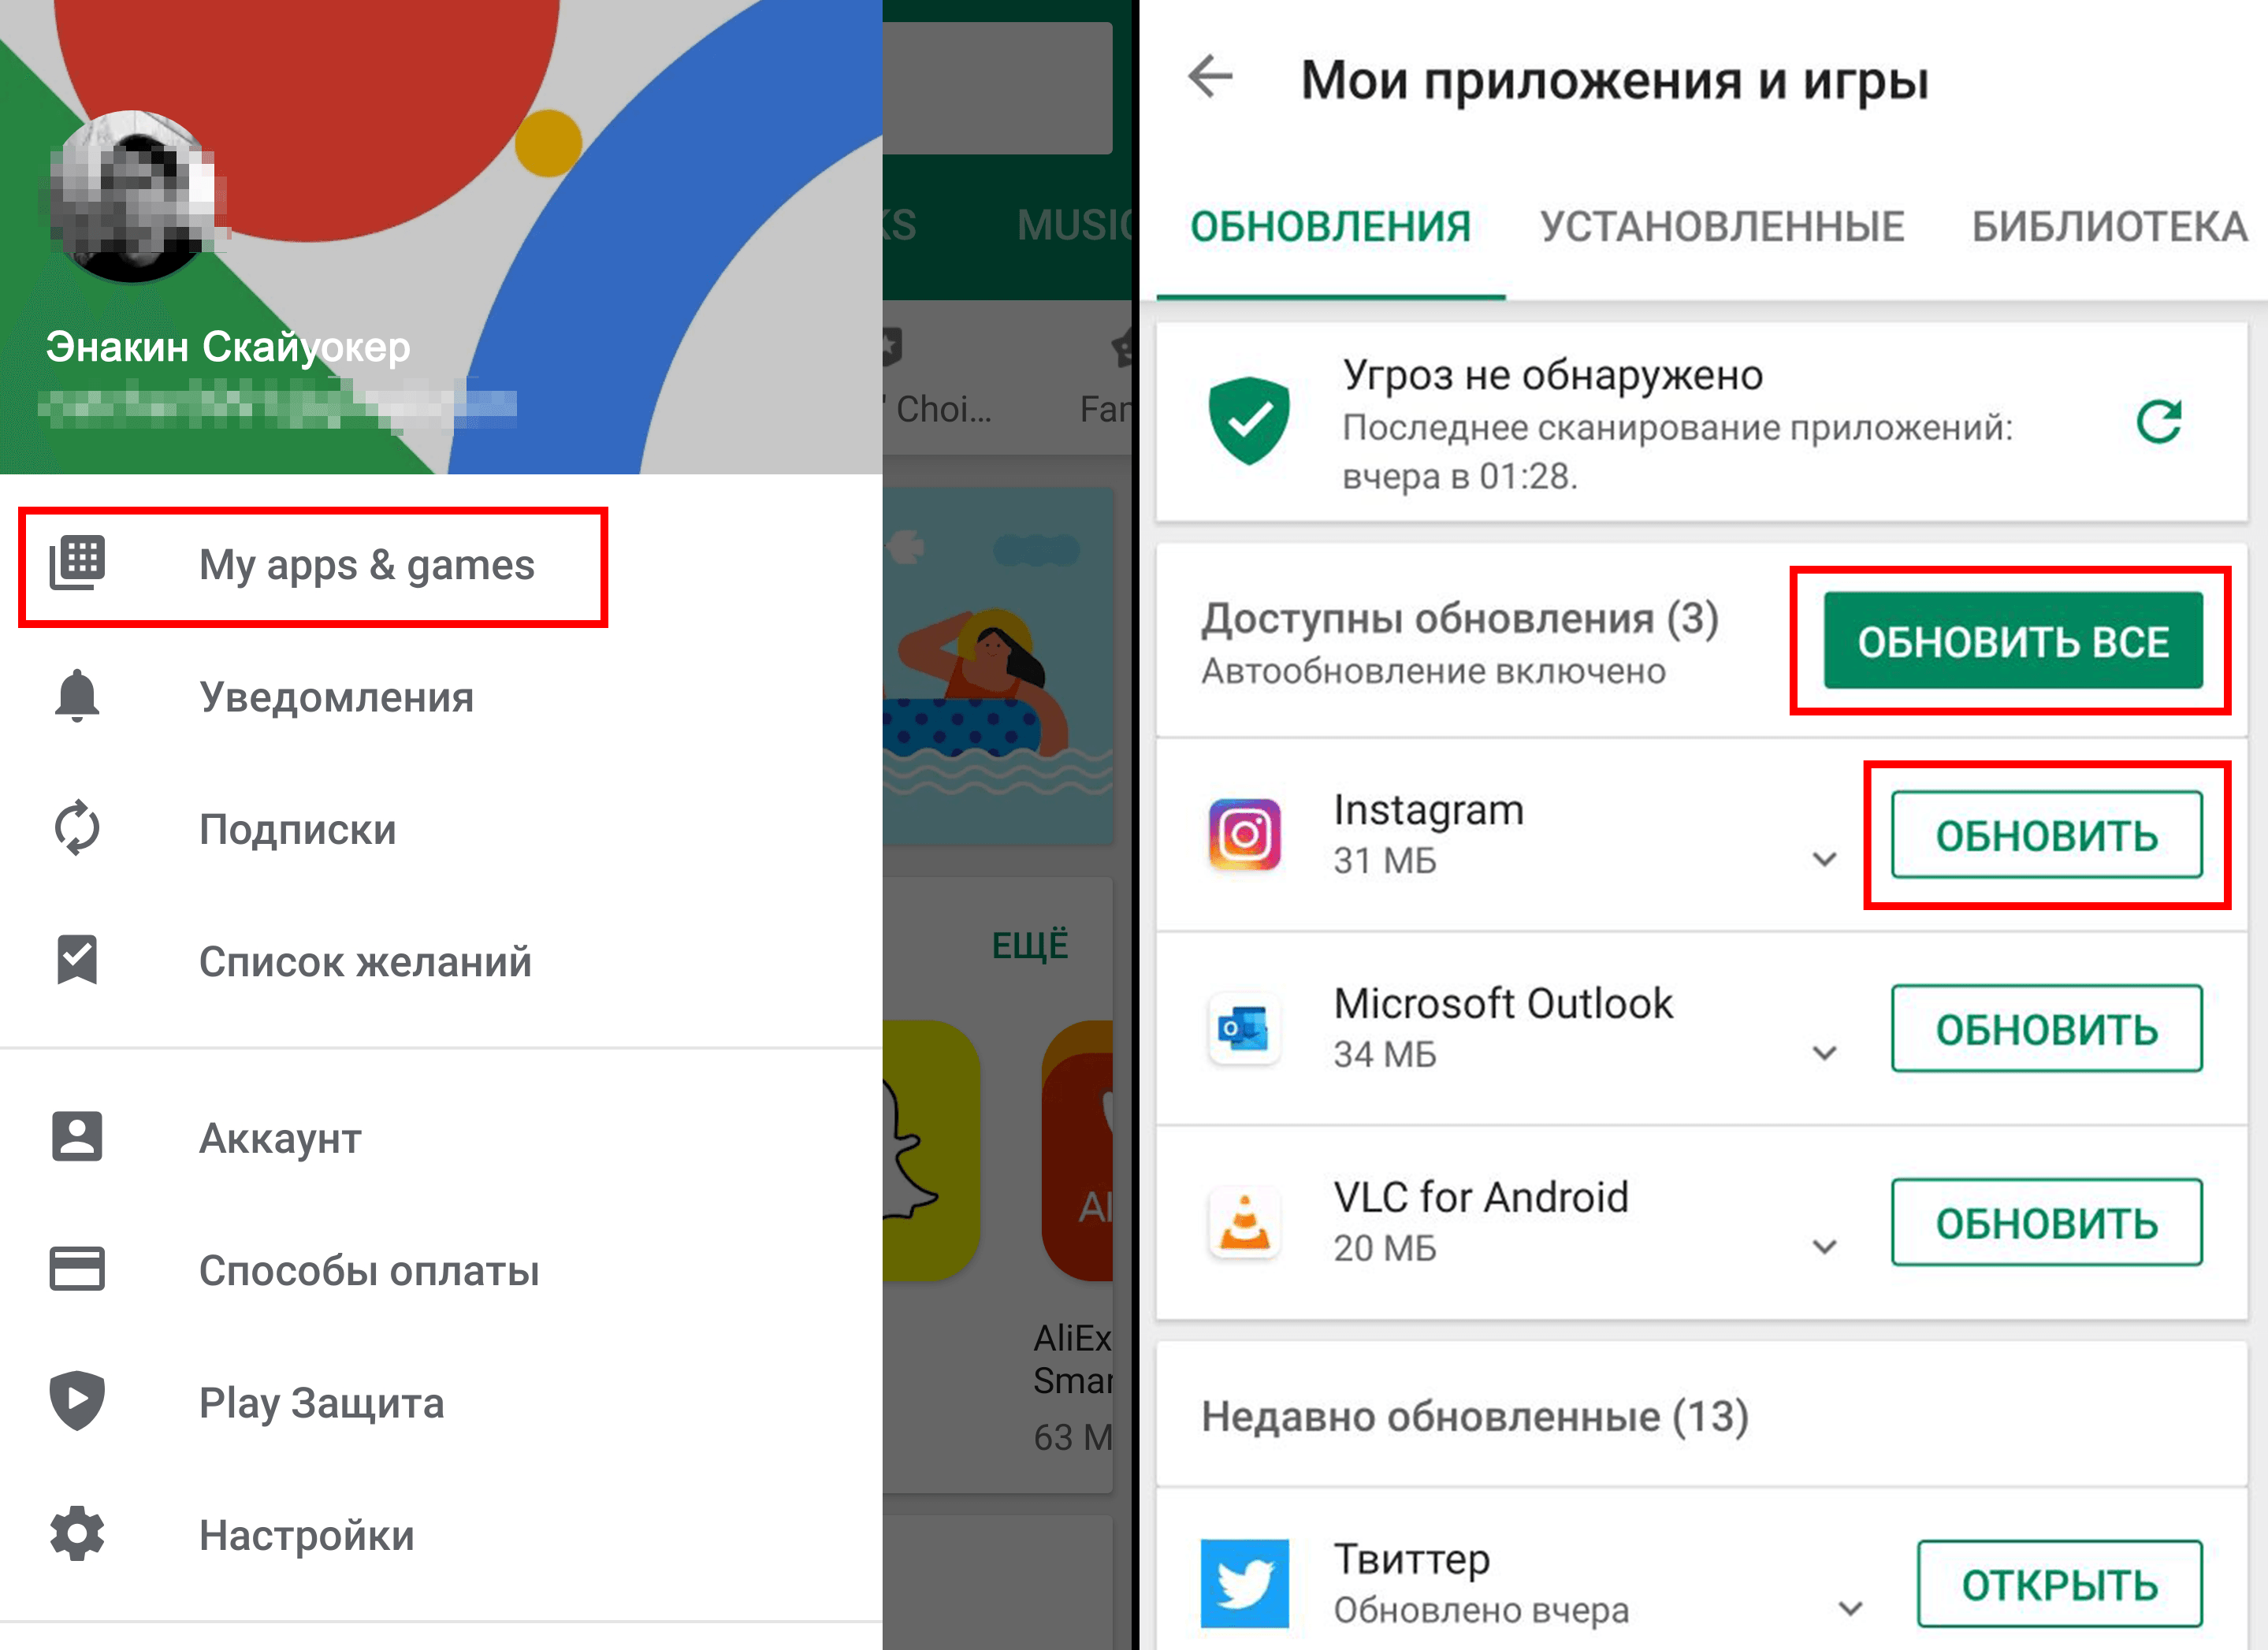 Обновить телеграмм до последней версии бесплатно на русском языке как андроид фото 55